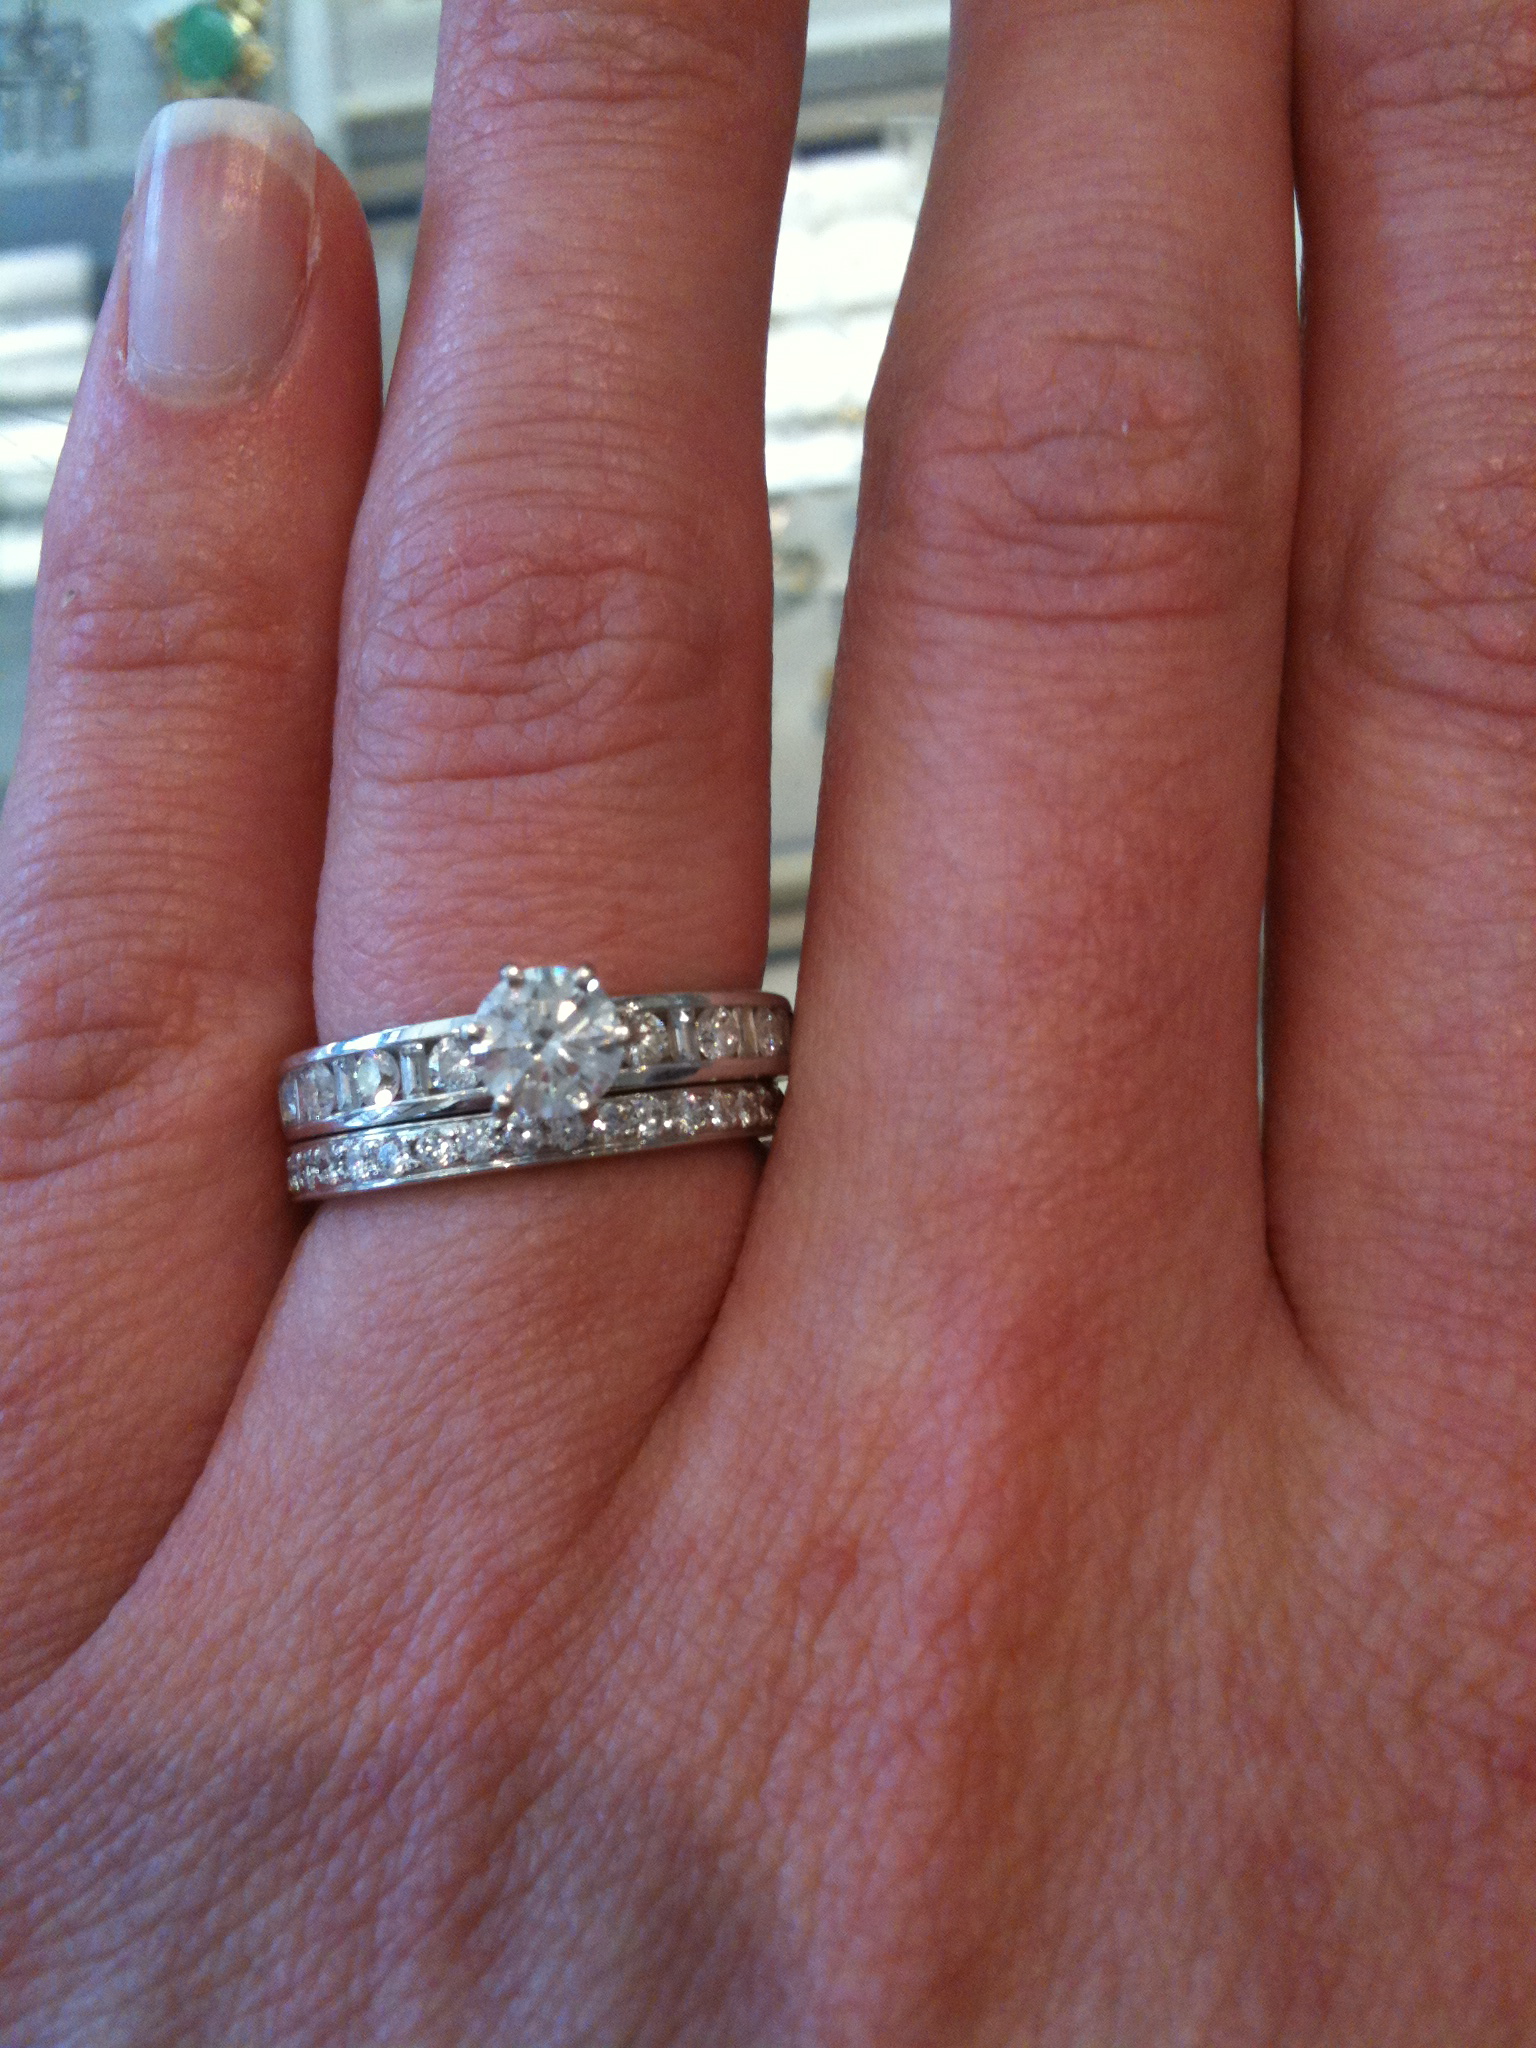 Wearing eternity ring as wedding ring